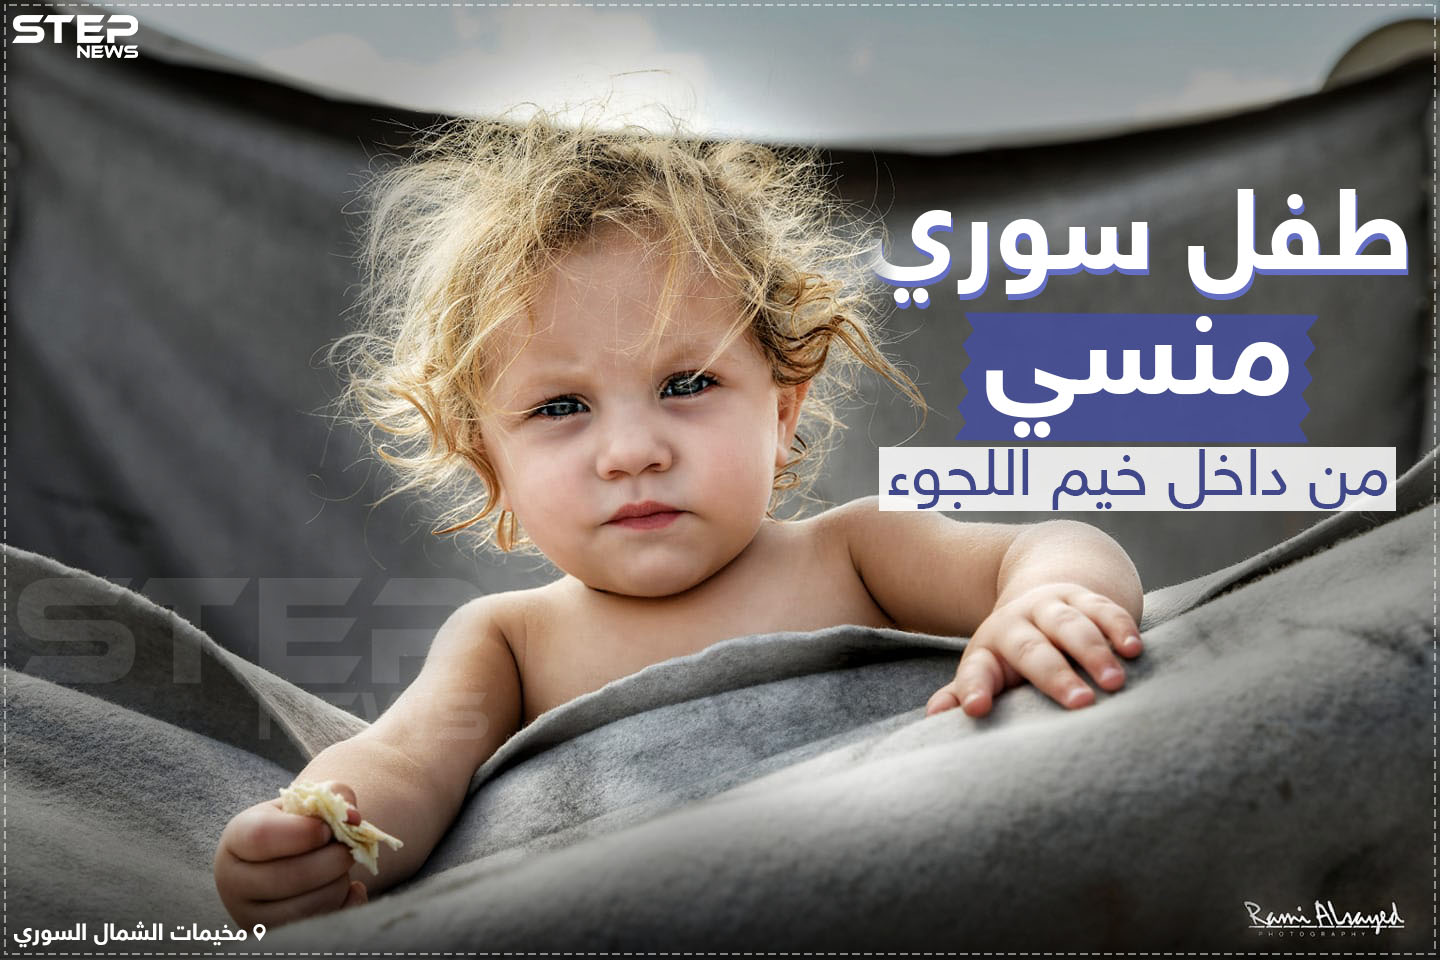 طفل سوري منسي من داخل خيم اللجوء